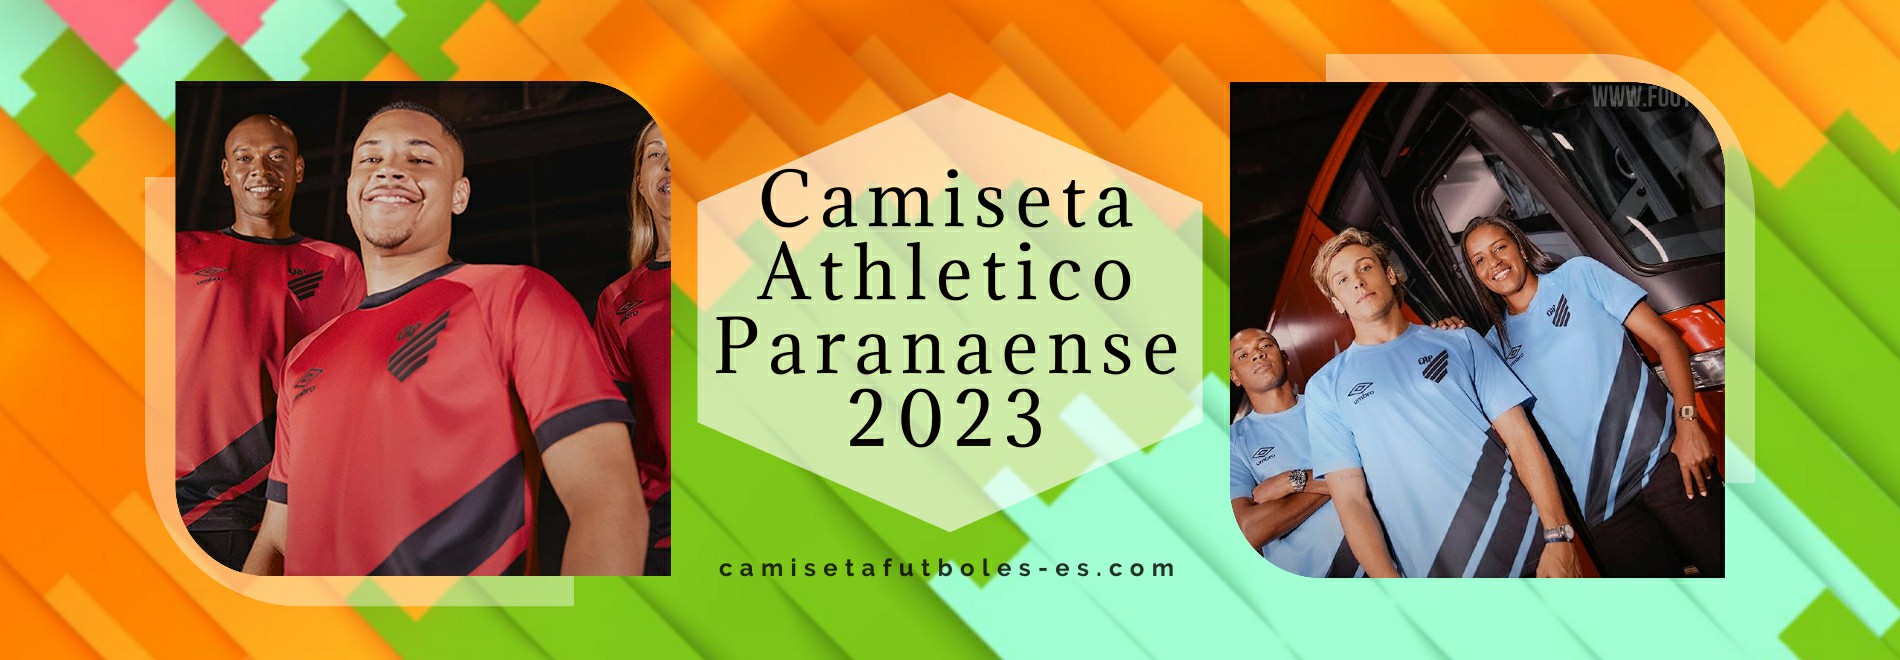 Camiseta Athletico Paranaense 2023-2024